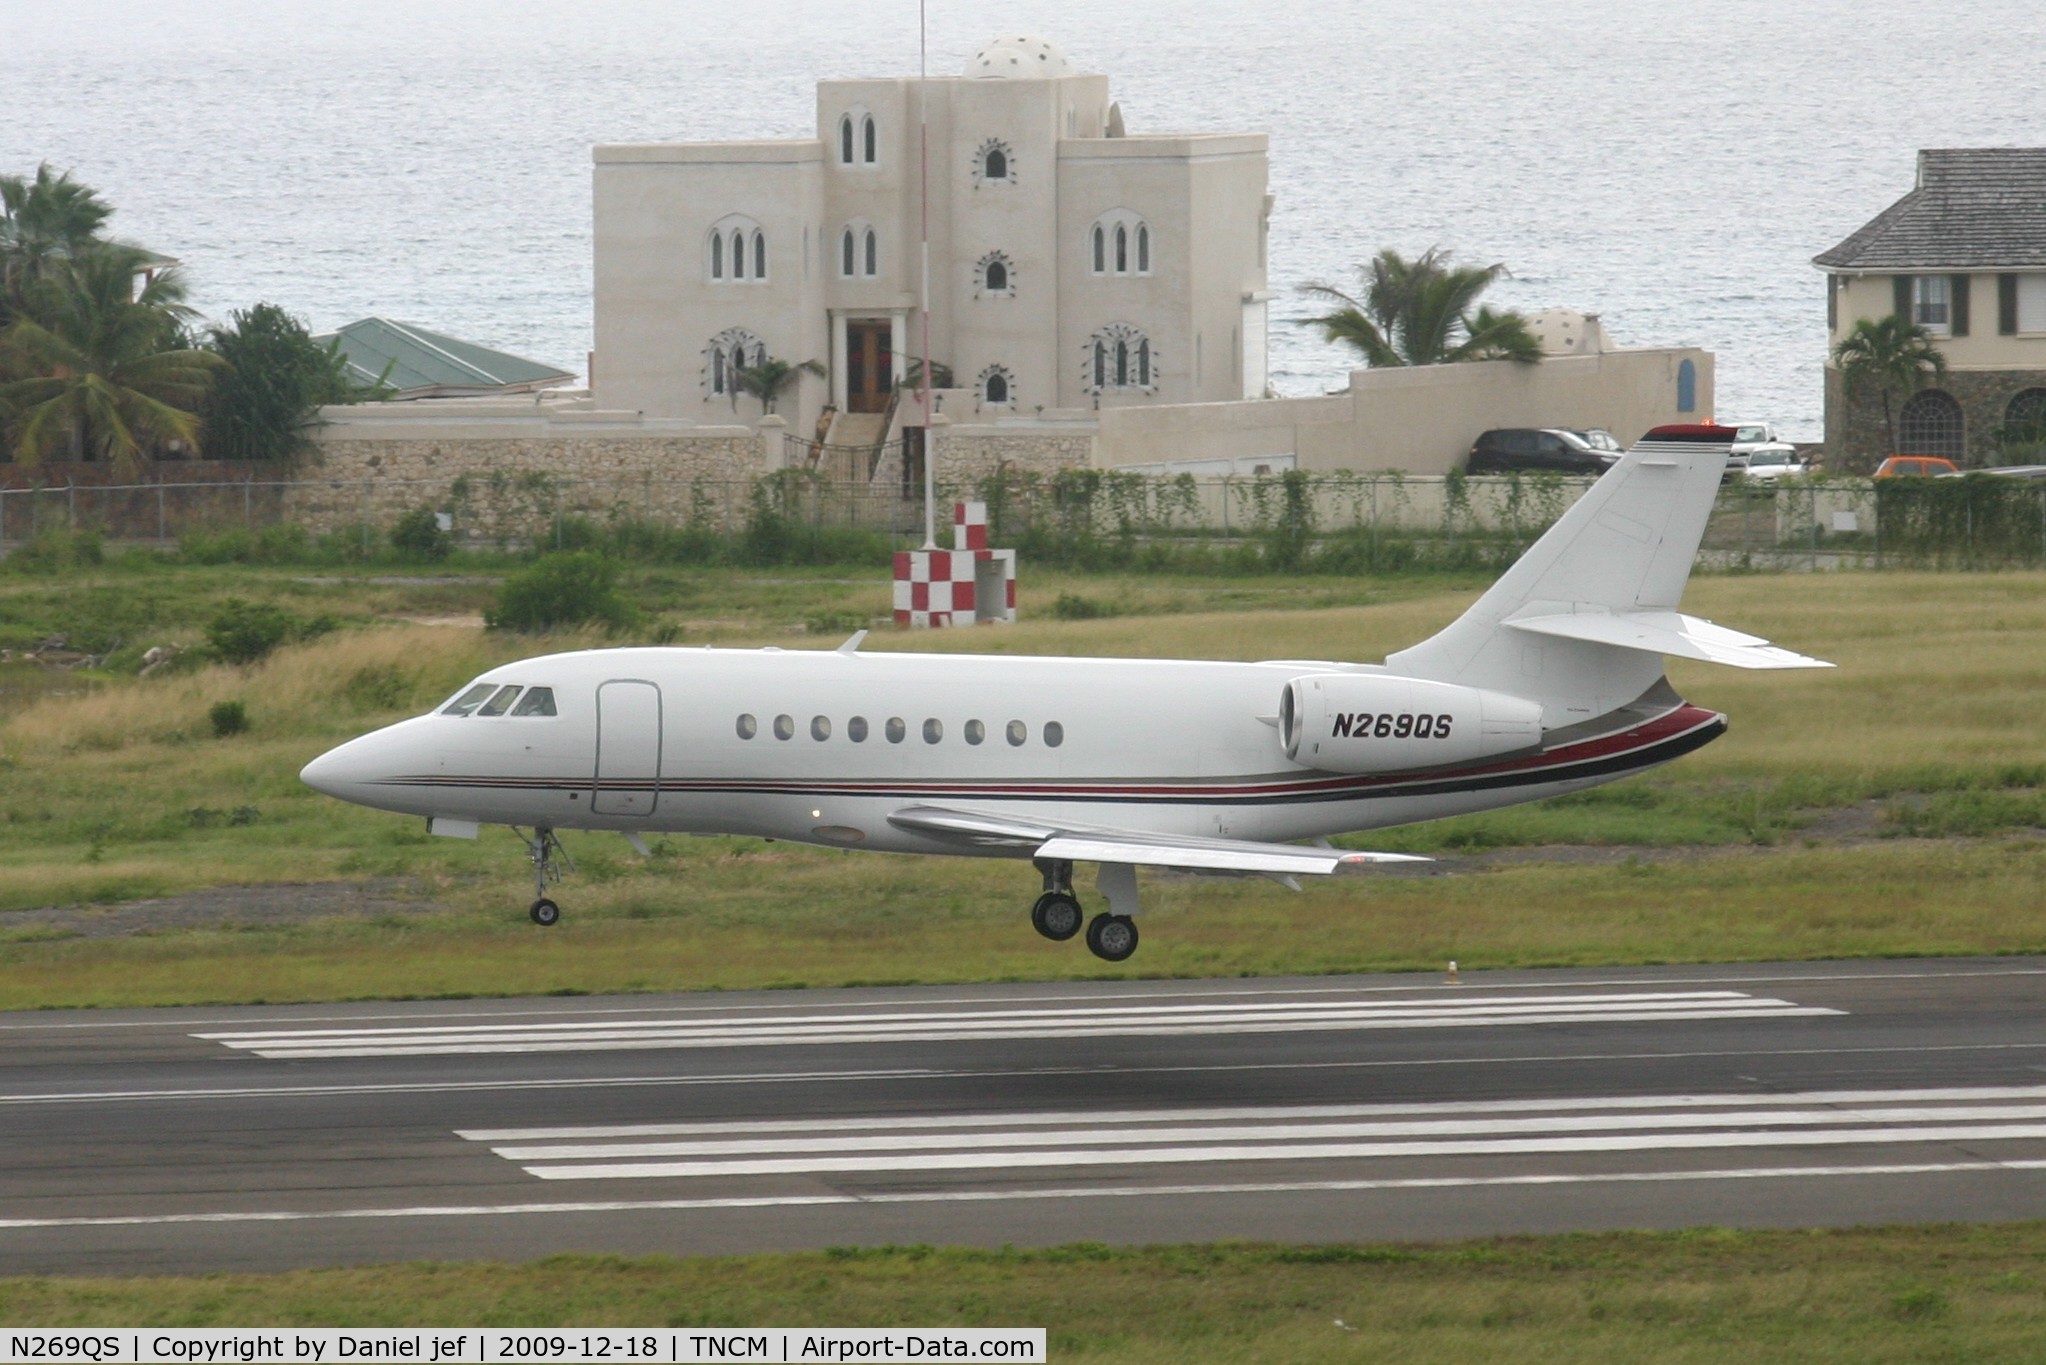 N269QS, 2002 Dassault Falcon 2000 C/N 169, N269QS Landing at St Maarten